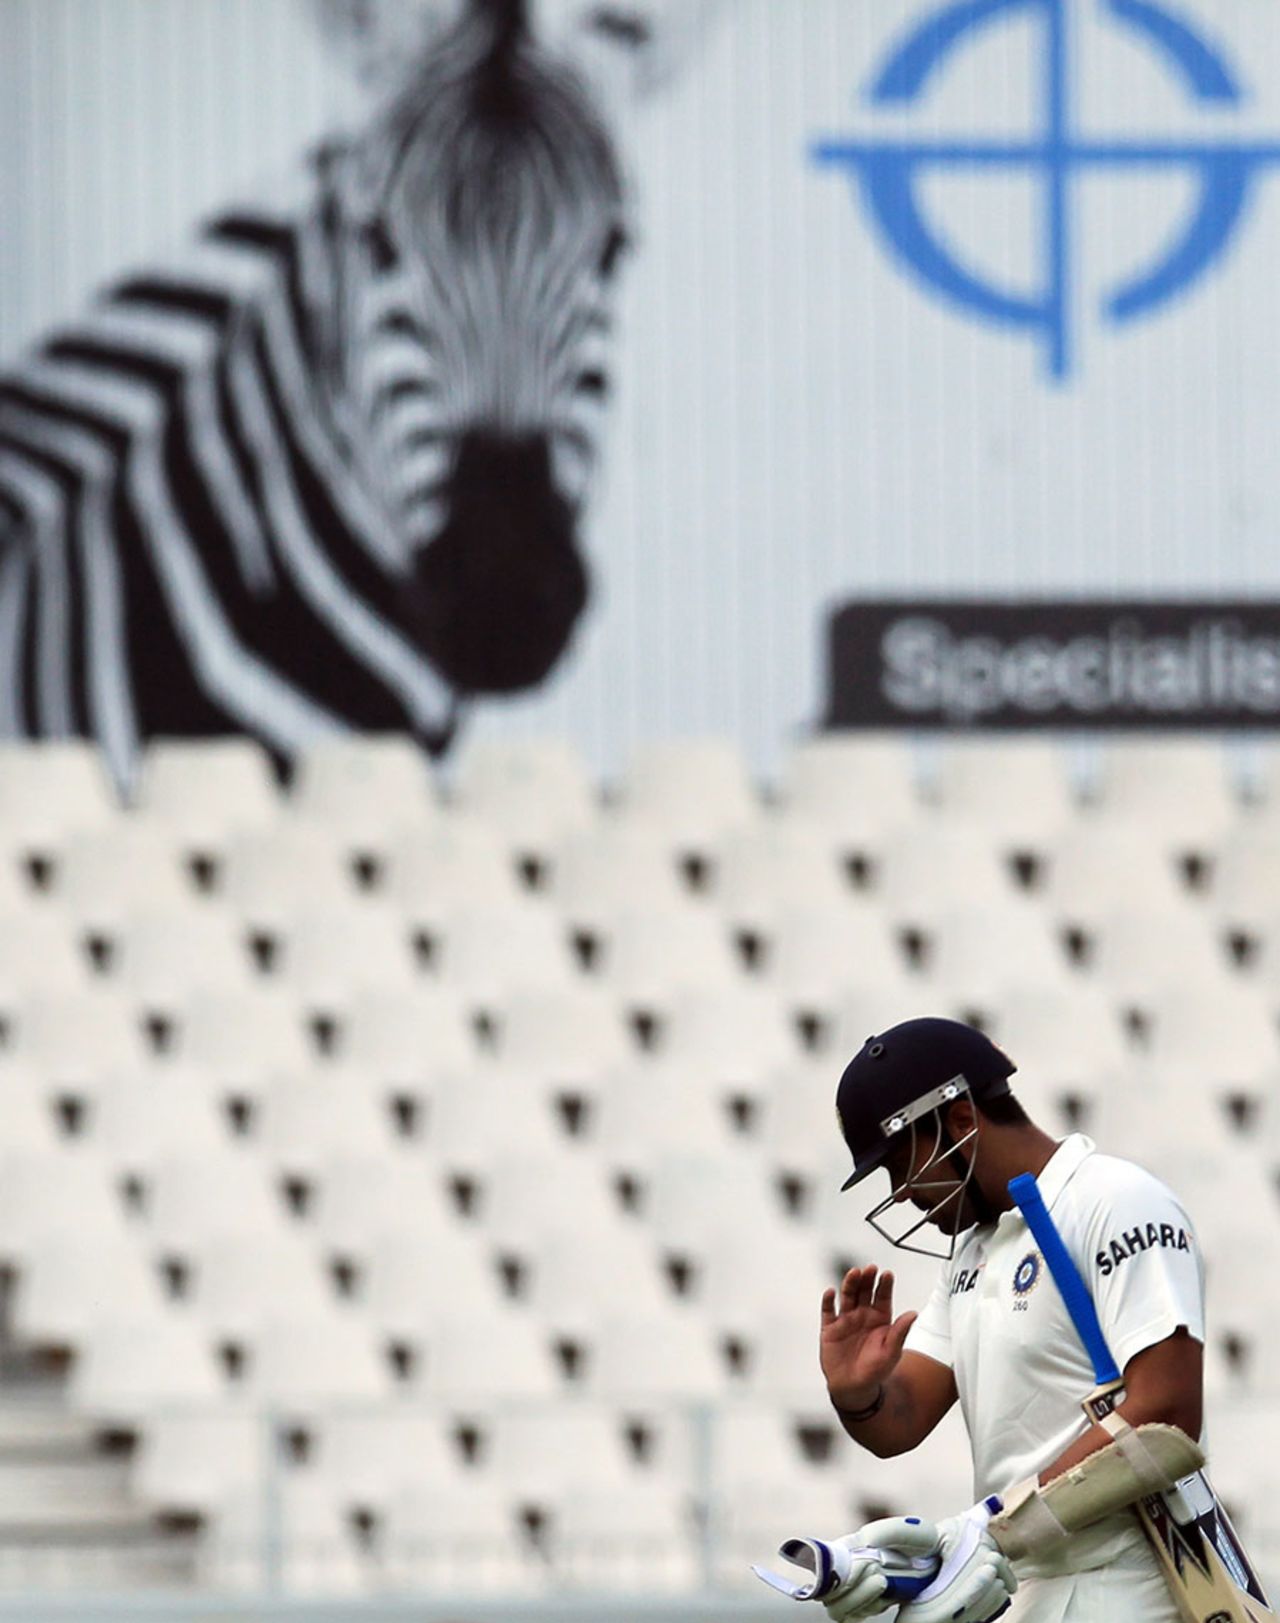 Murali Vijay walks back after being dismissed for 39, South Africa v India, 1st Test, Johannesburg, 3rd day, December 20, 2013